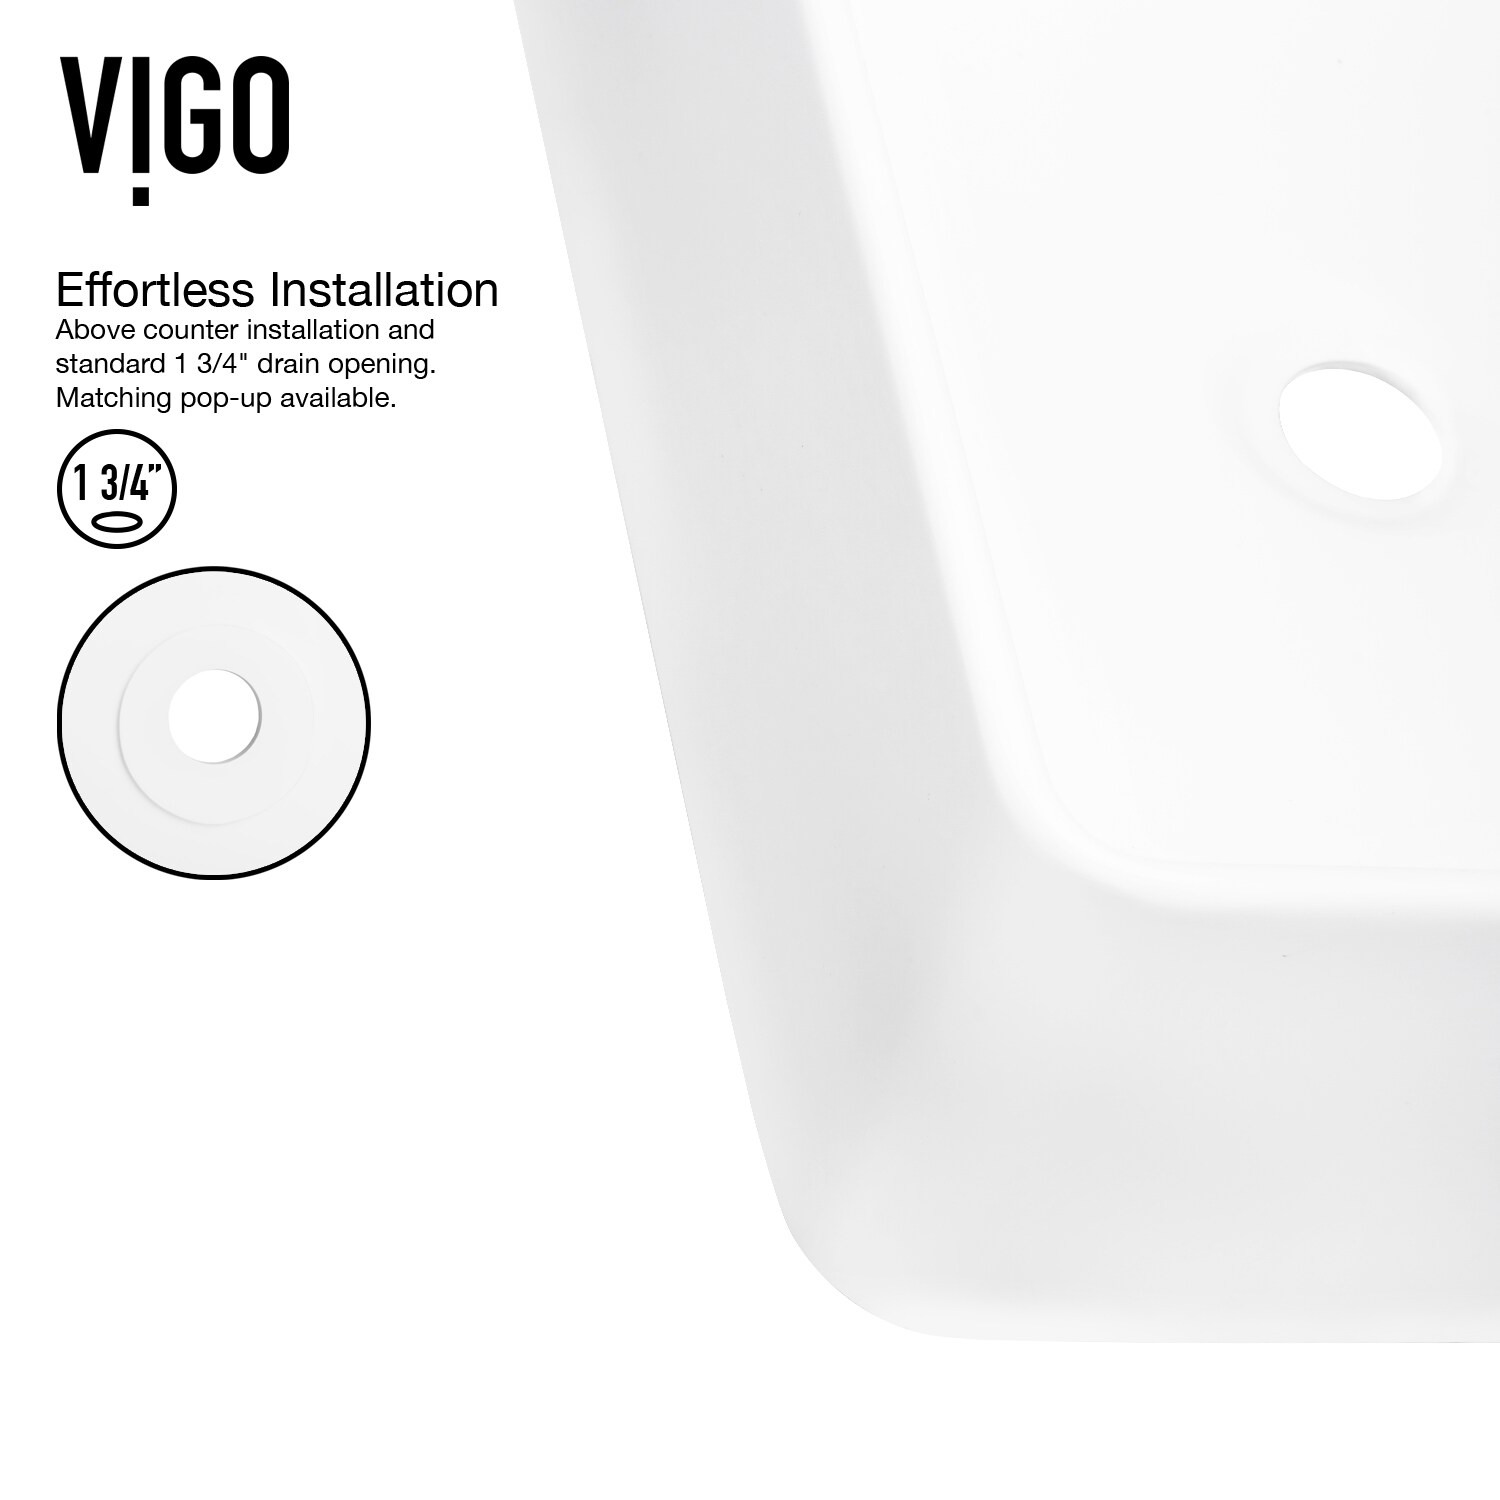 VIGO Amaryllis Matte White Matte Stone Vessel Rectangular Modern Bathroom Sink (19.75-in x 14.375-in)